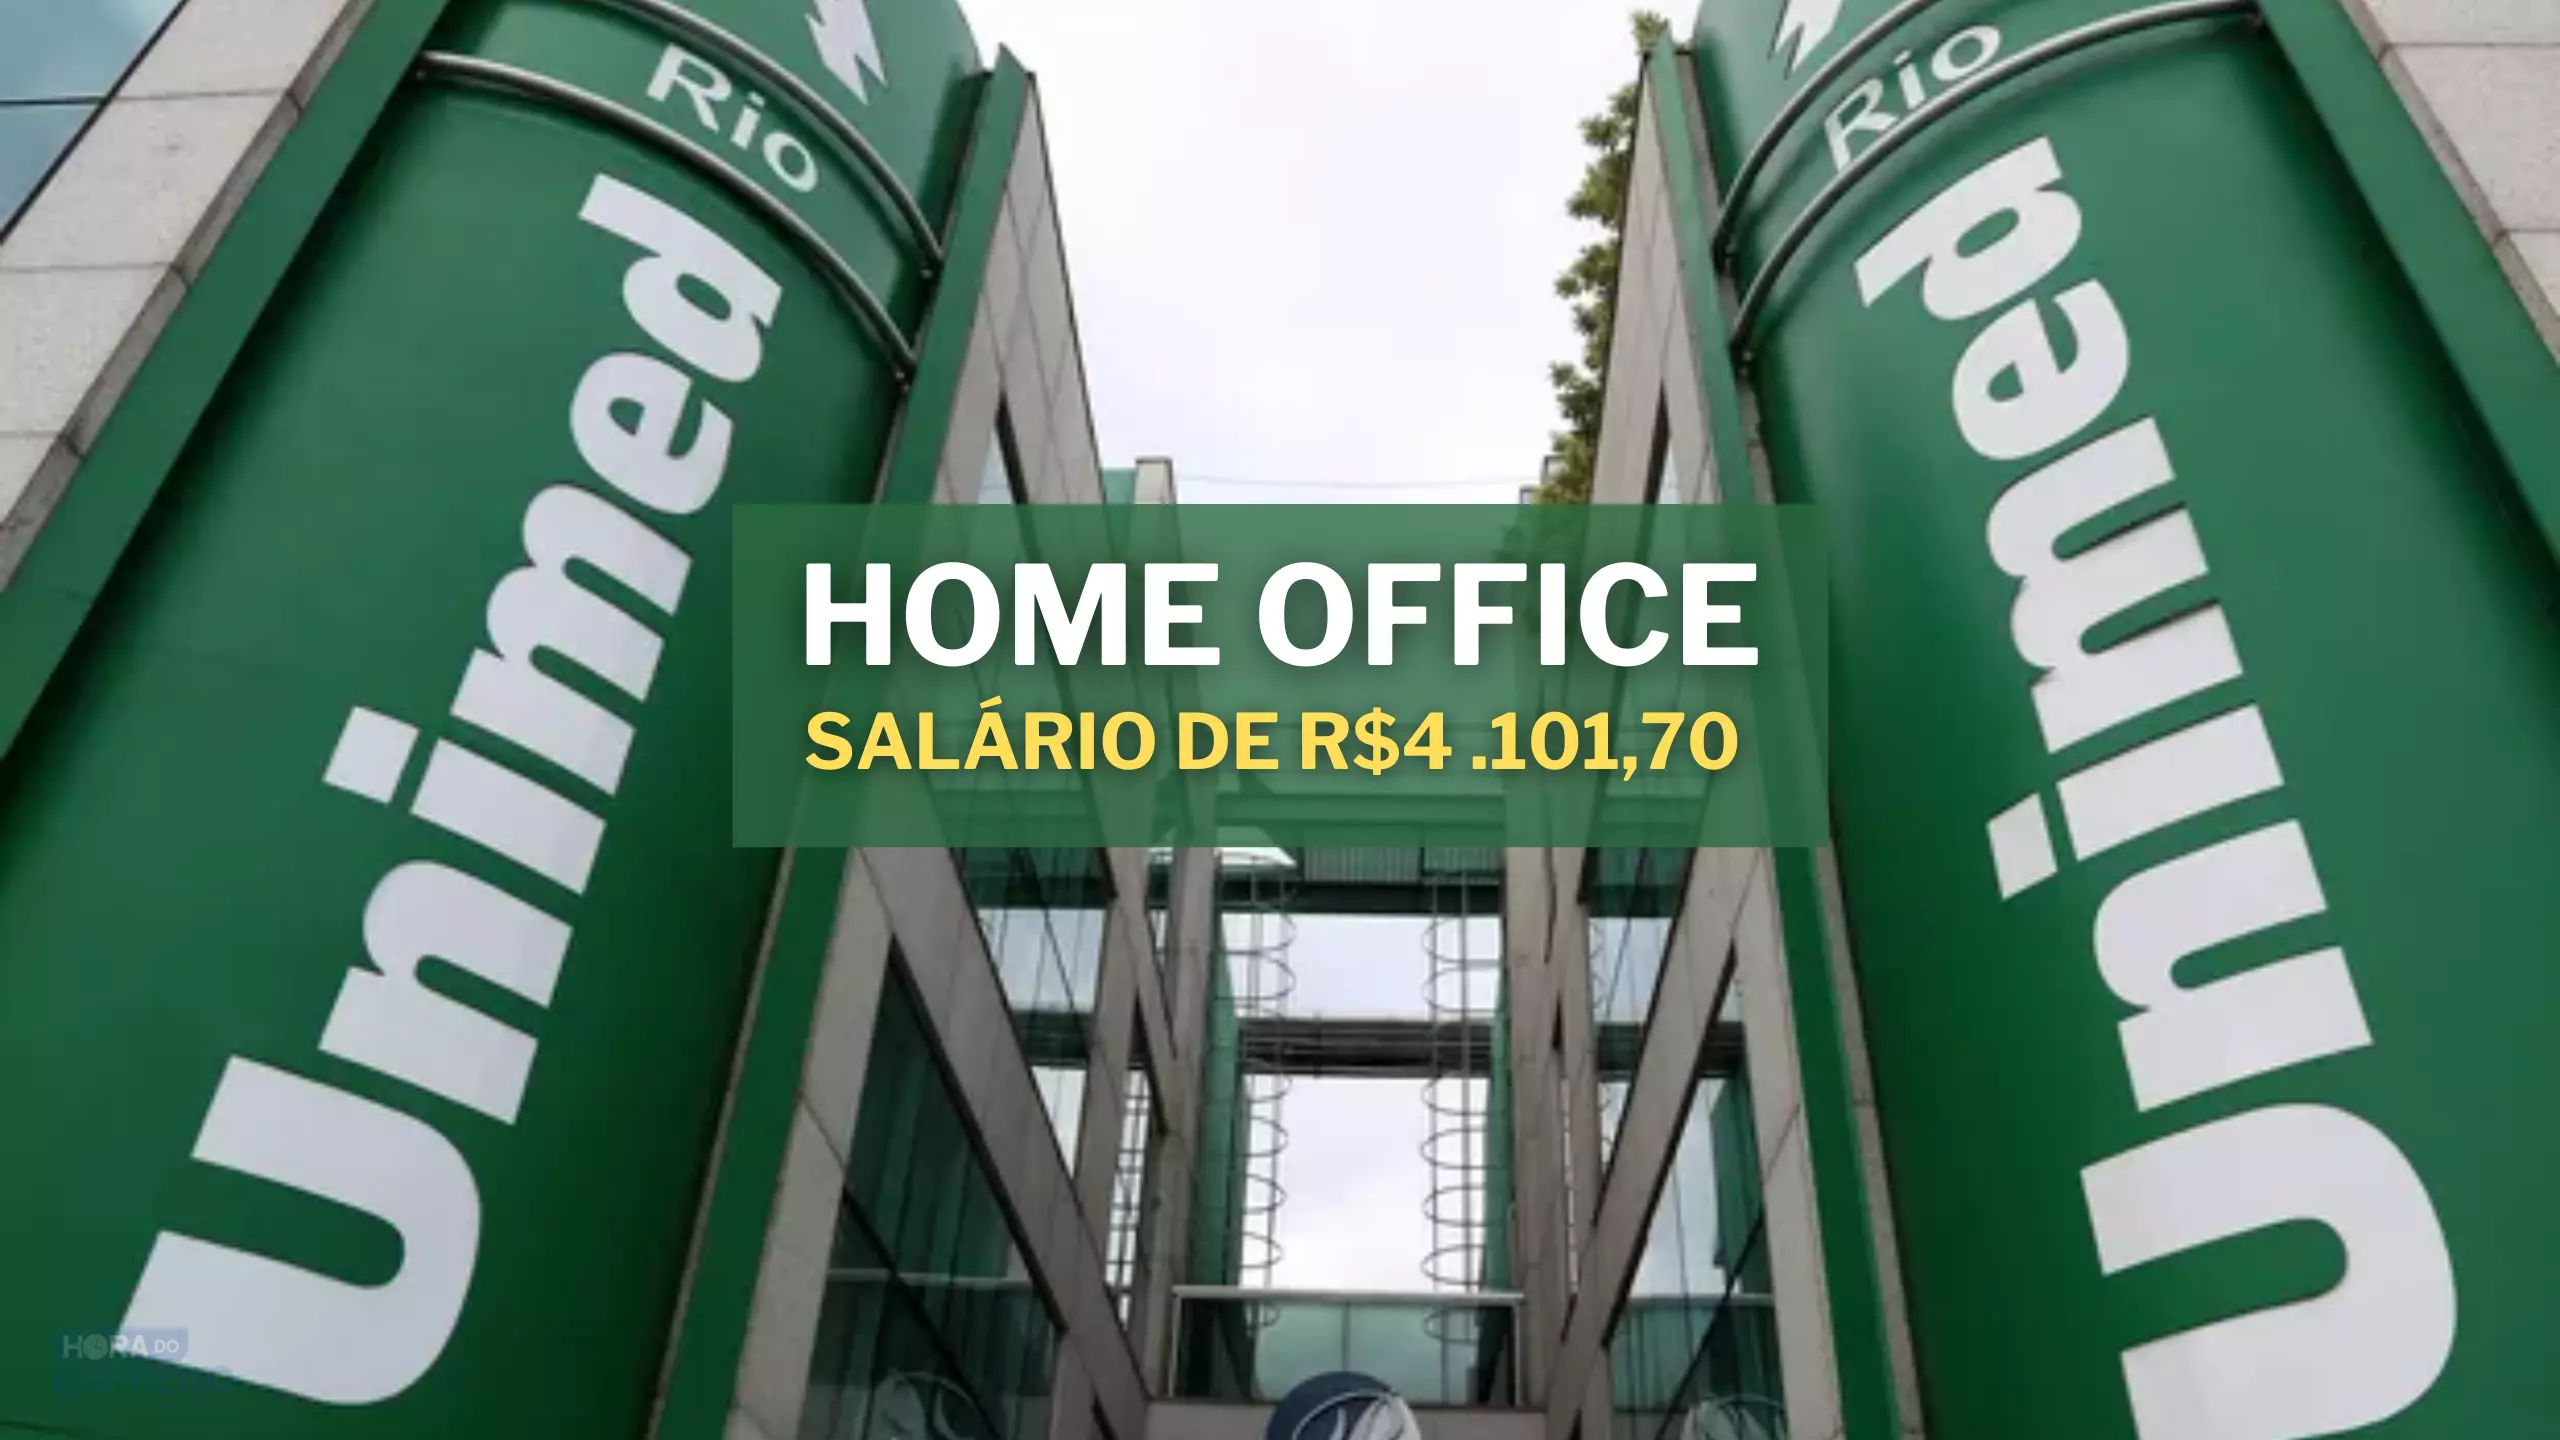 Unimed abre vagas HOME OFFICE para trabalhar de casa ONLINE como DIGITADOR  DE FATURAS com salário de até R$ 1.800,00 - Hora do Emprego DF